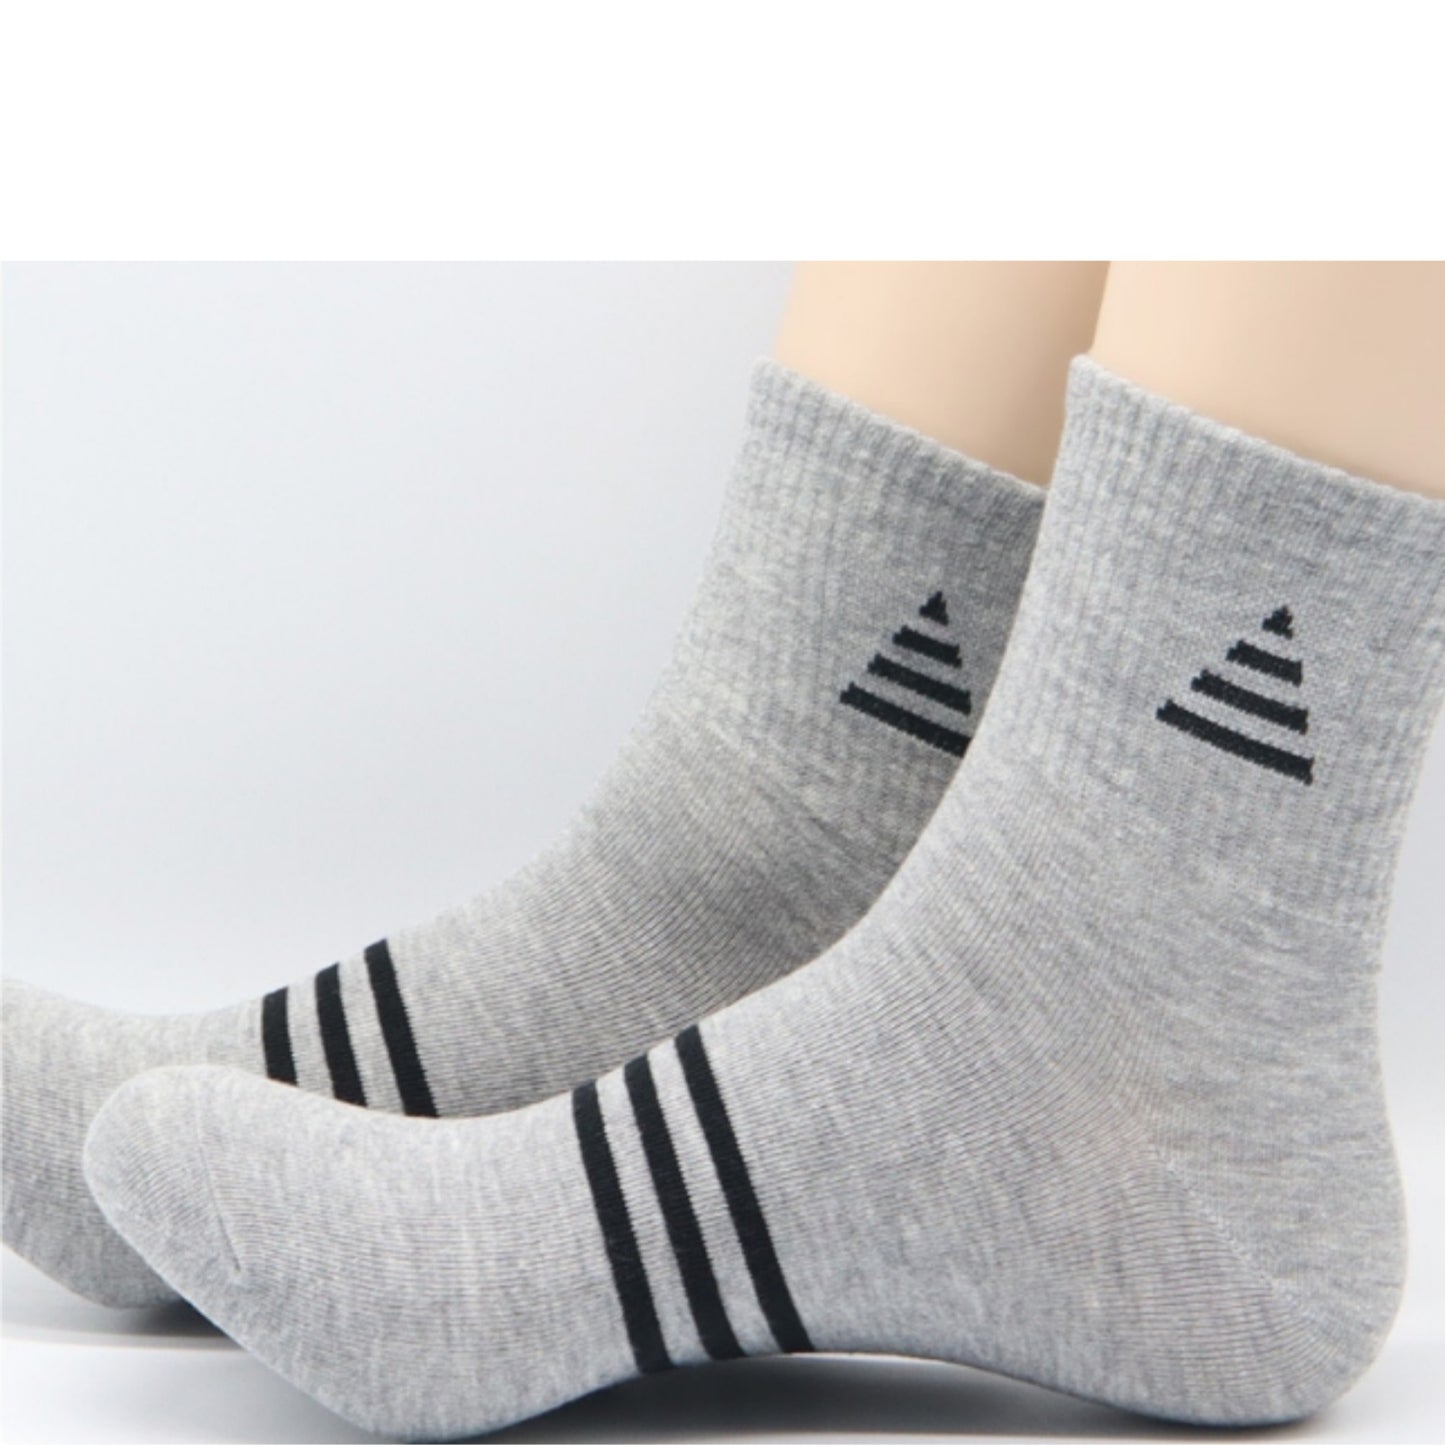 I&J Men's gentleman, sports triangular socks Cotton Moisture Wicking Cushion Crew Socks(6Pairs/12pairs)